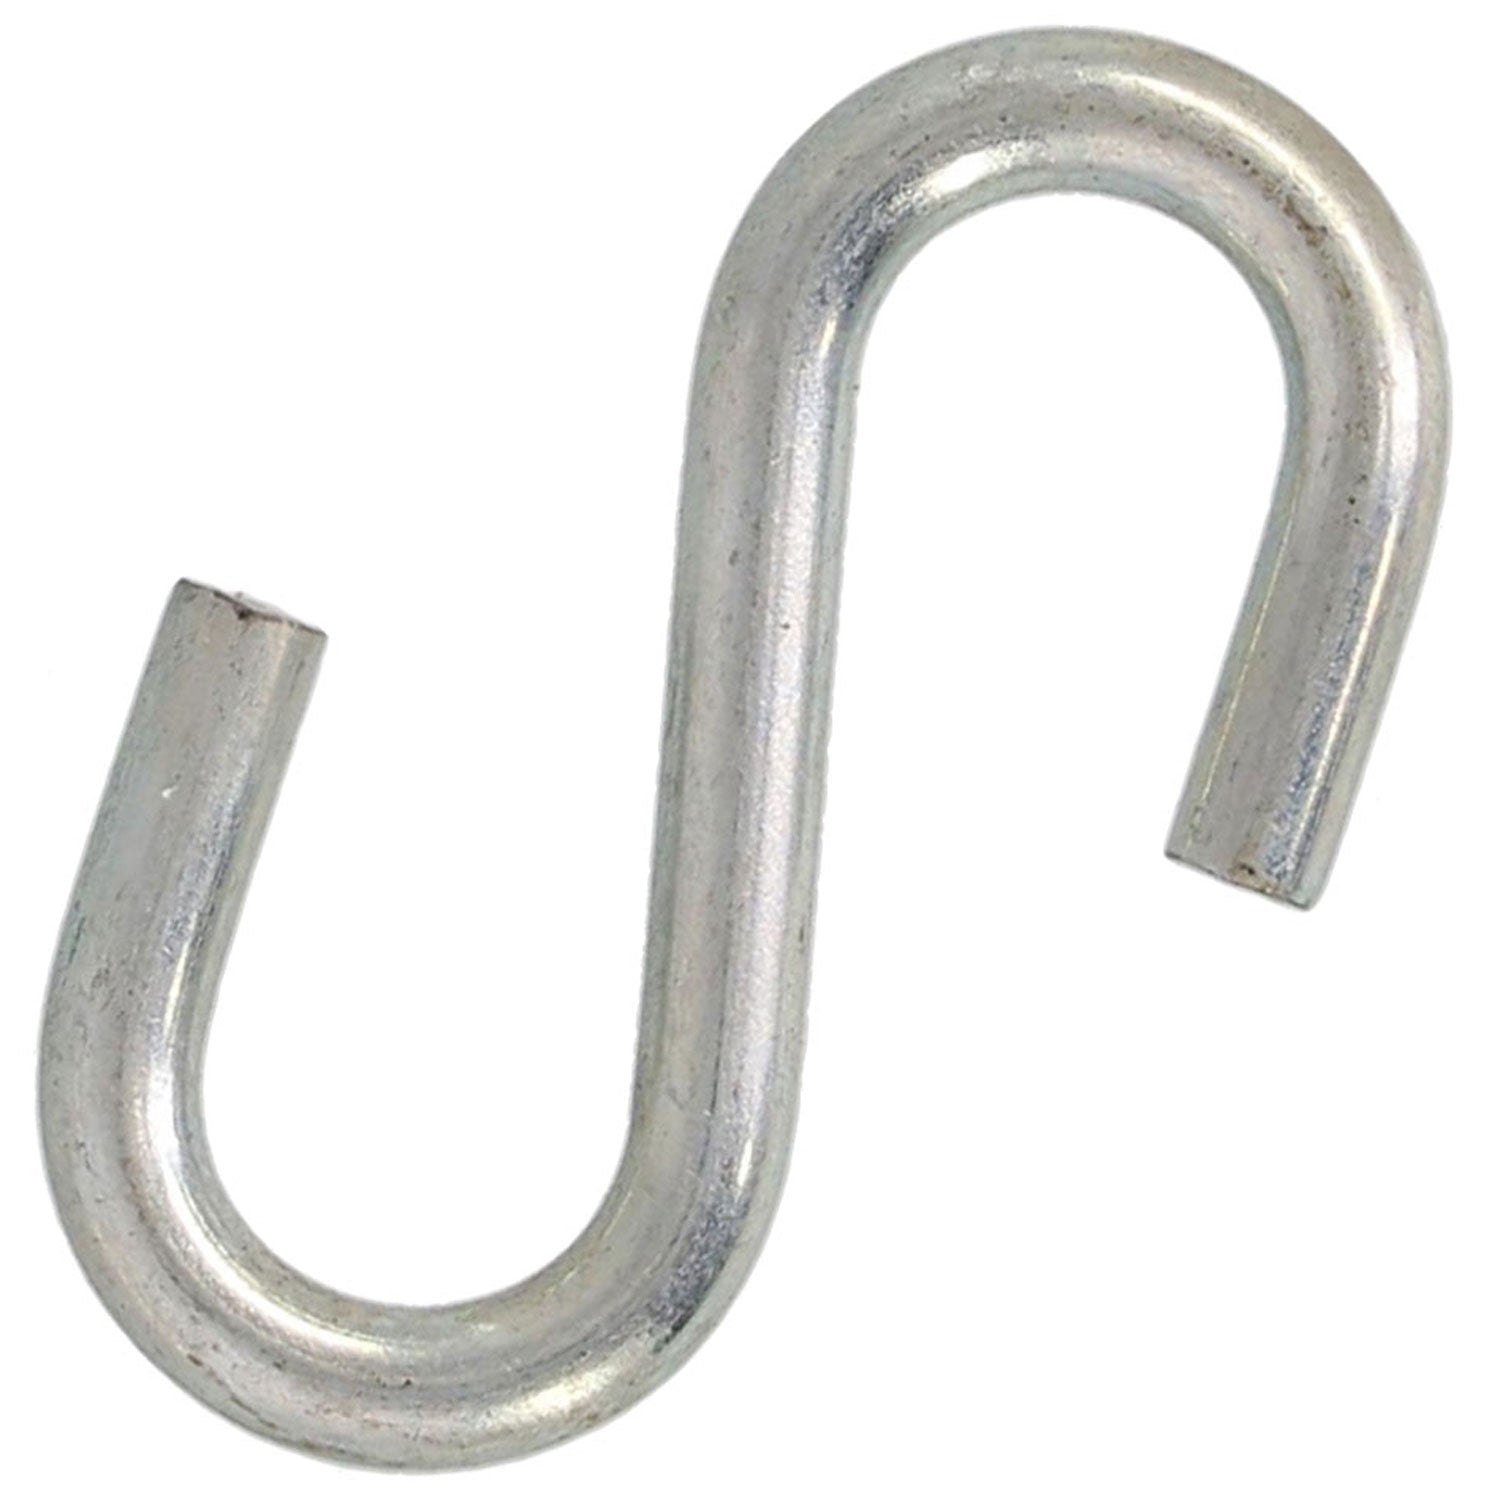 Hooks 1/4" x 2" 100 Zinc Plated S